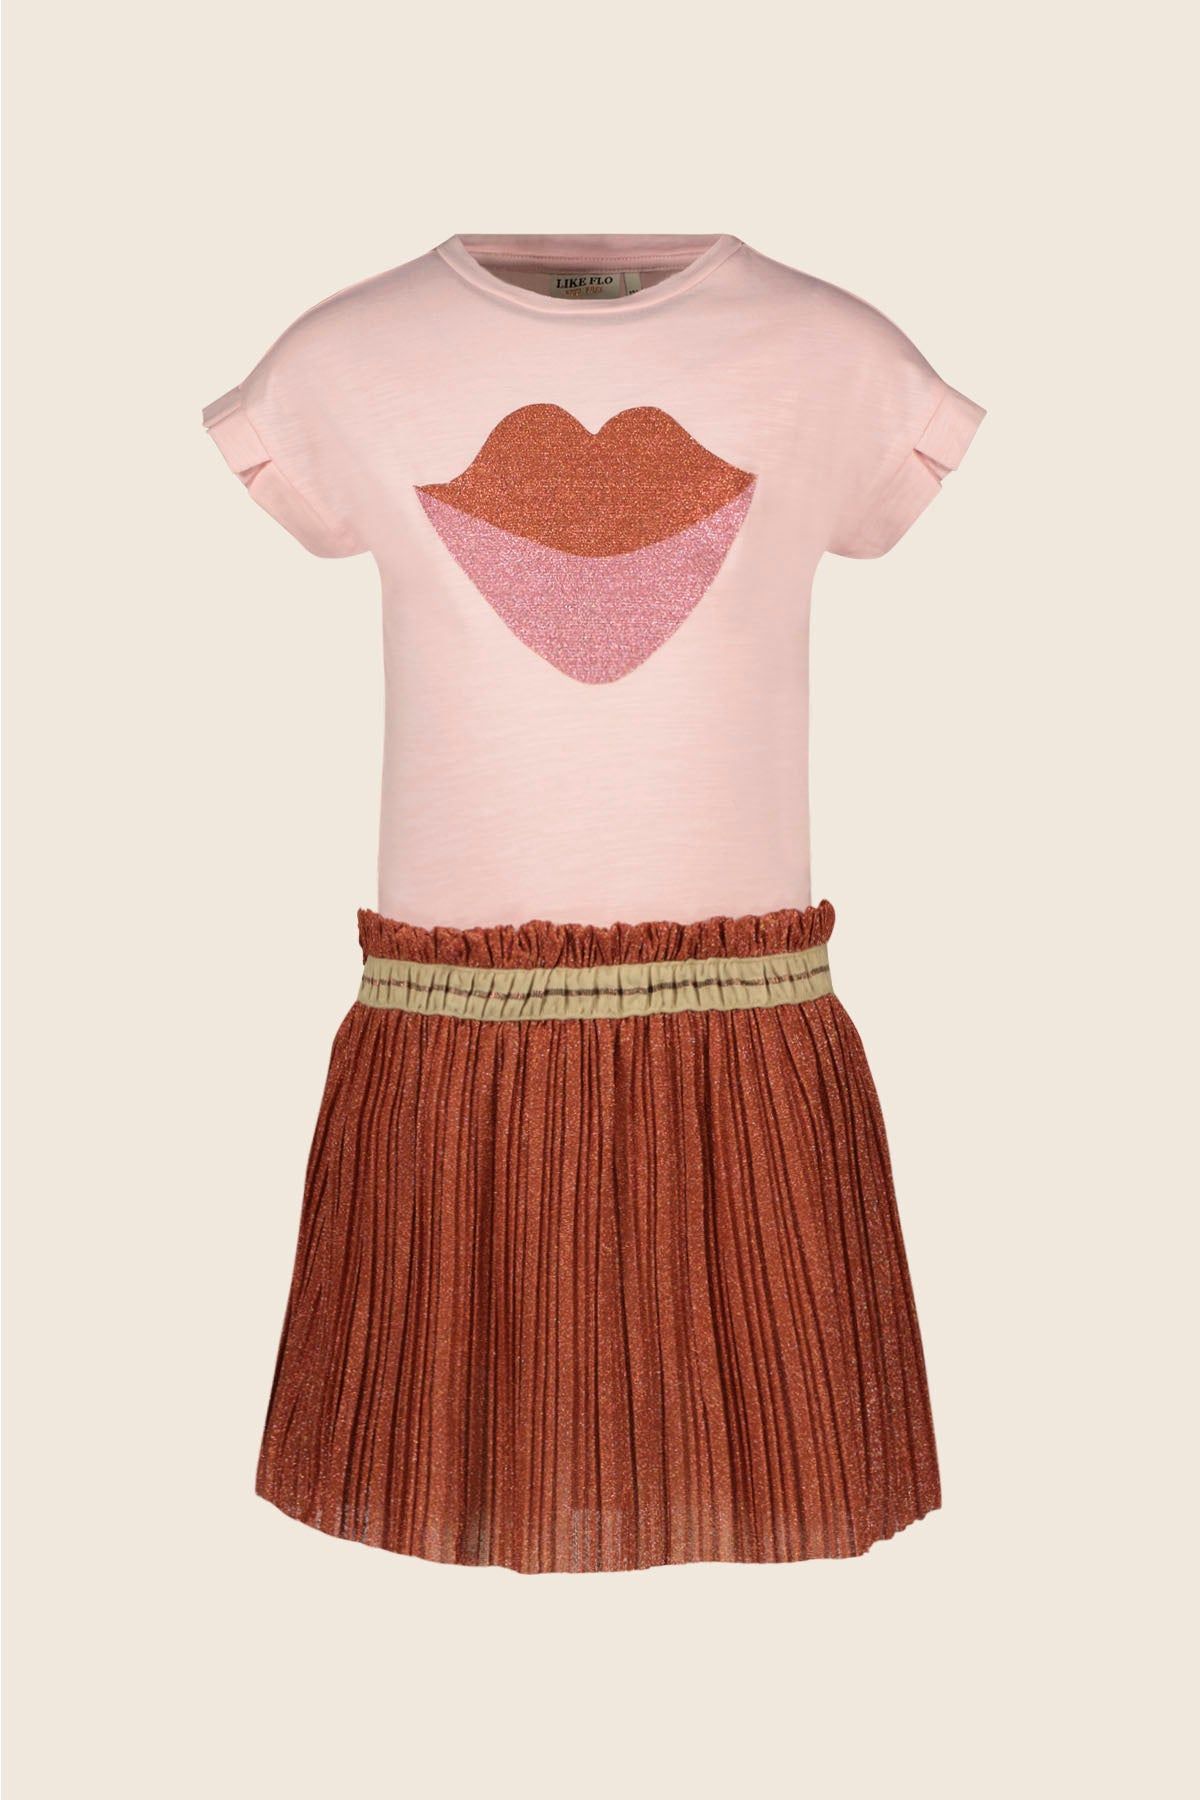 Rok Flo girls fancy jersey dress woven fancy skirt Apricot